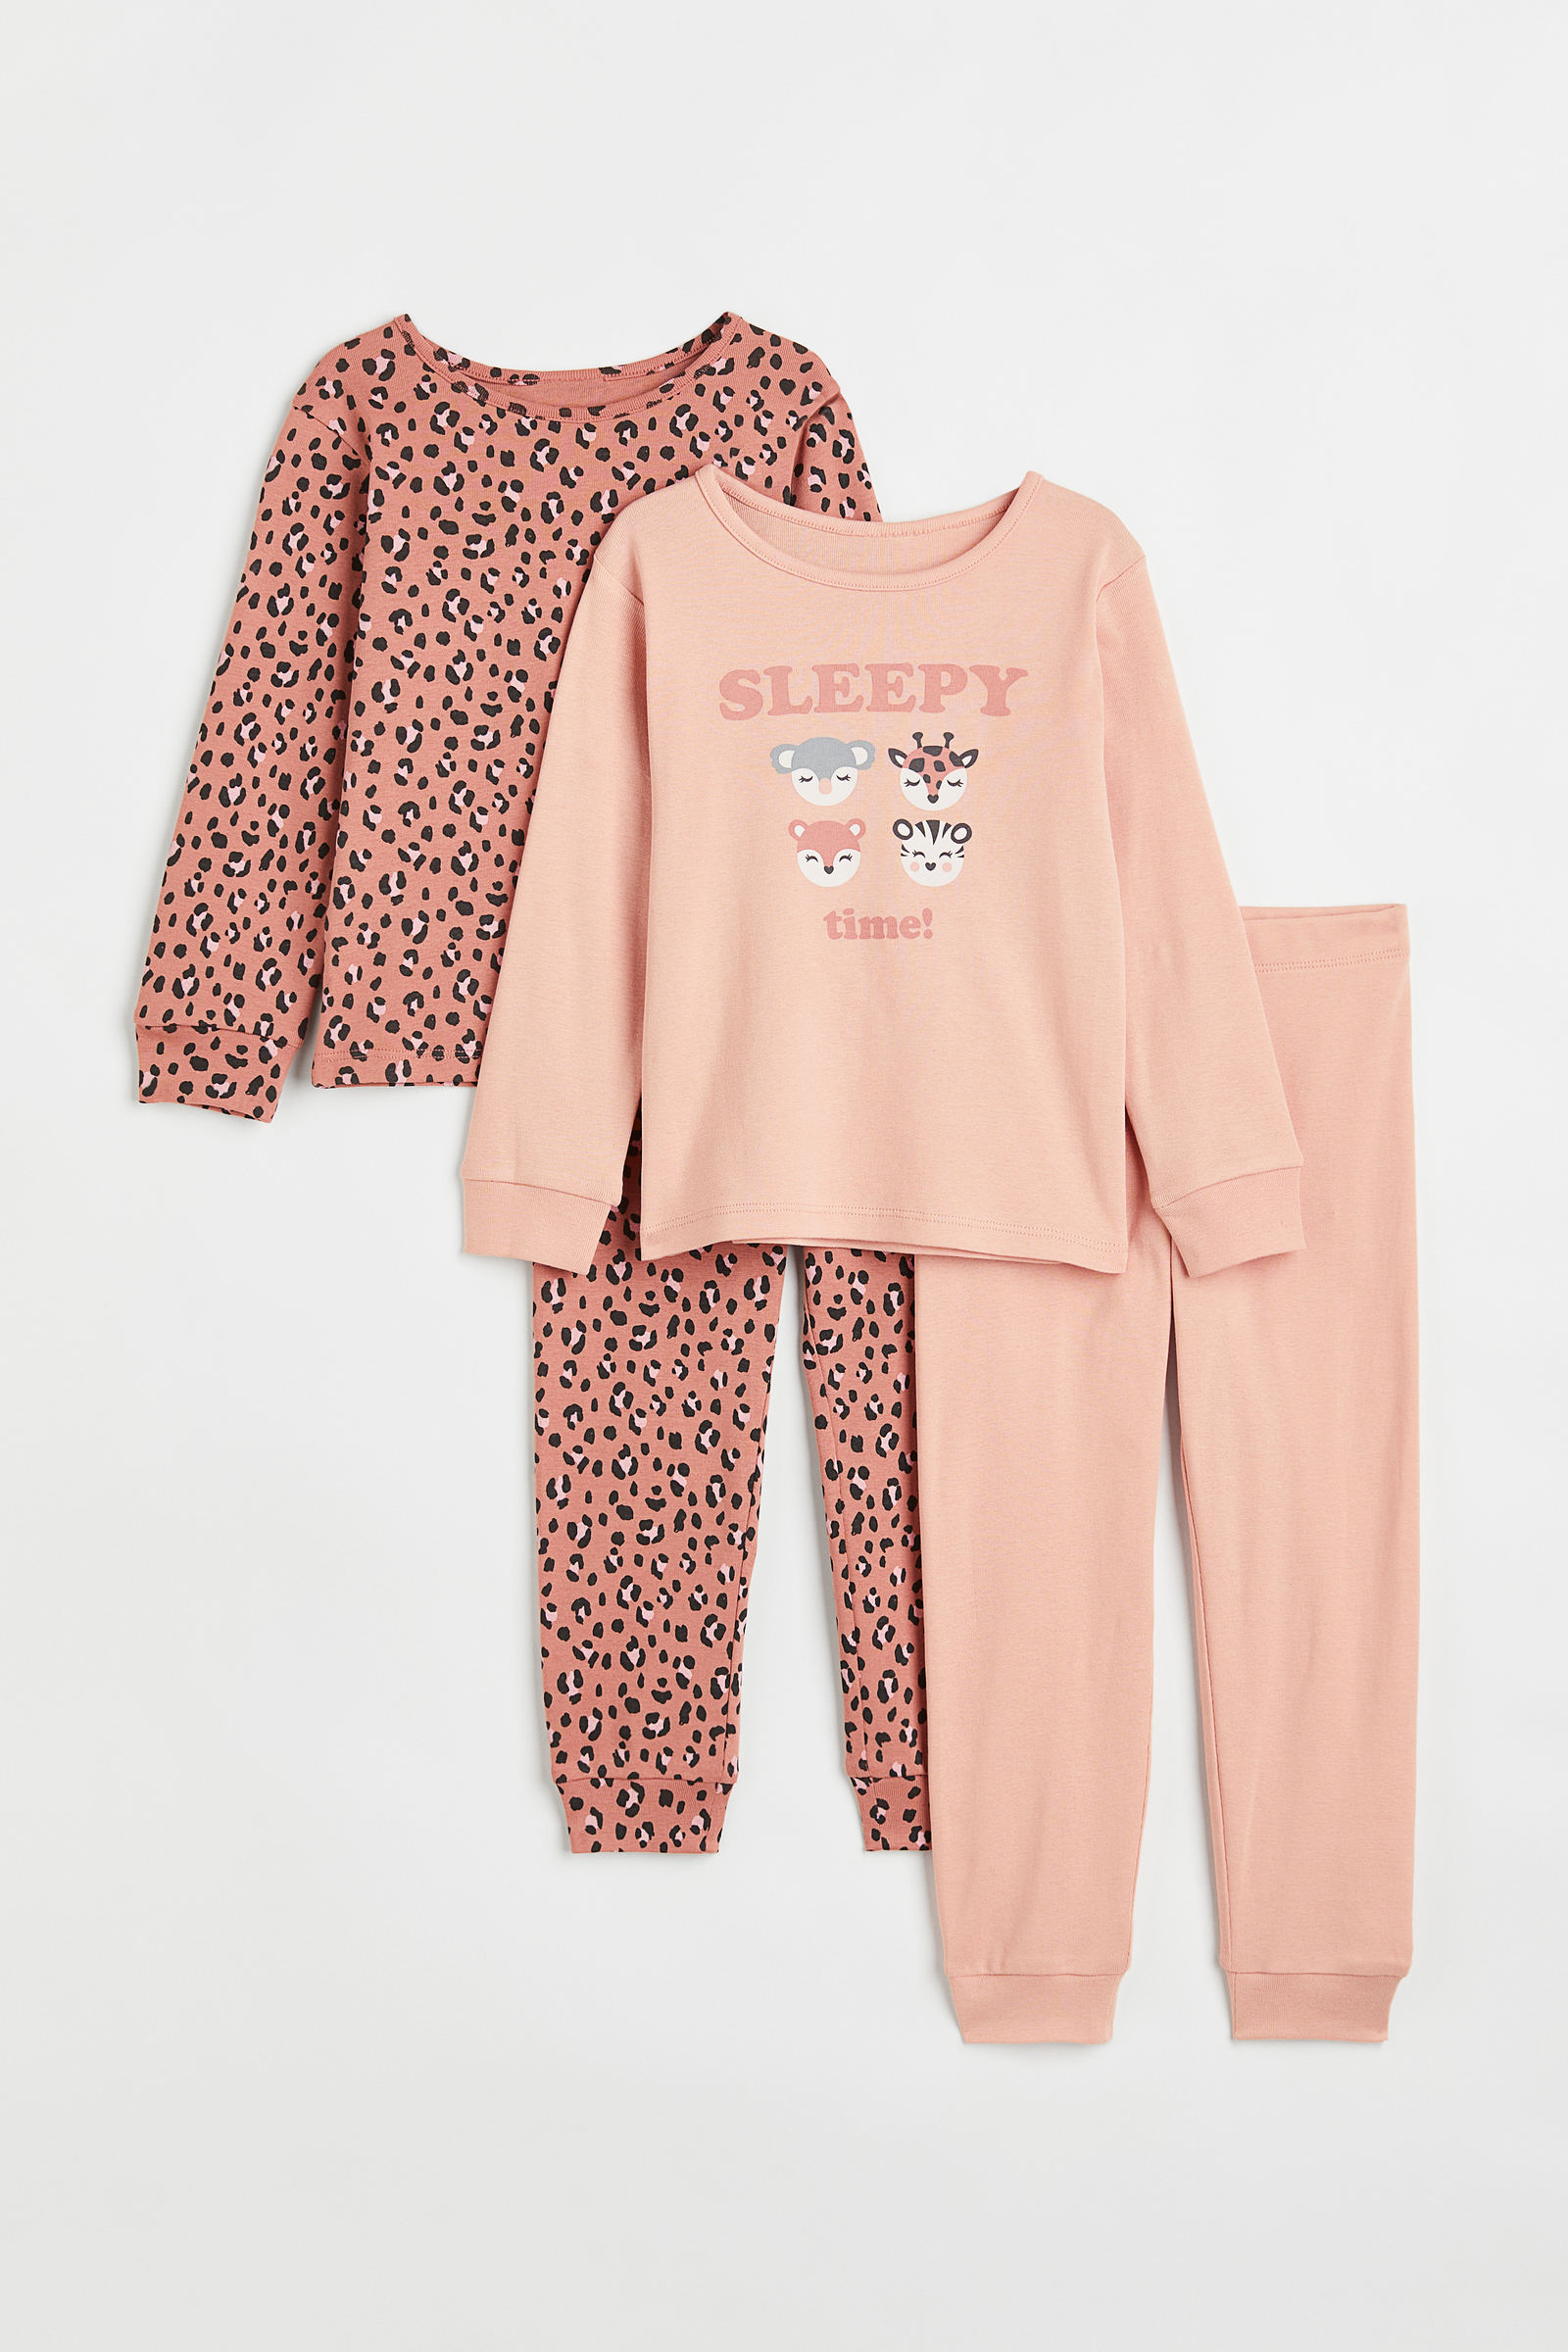 Pijamas y para dormir - H&M CL